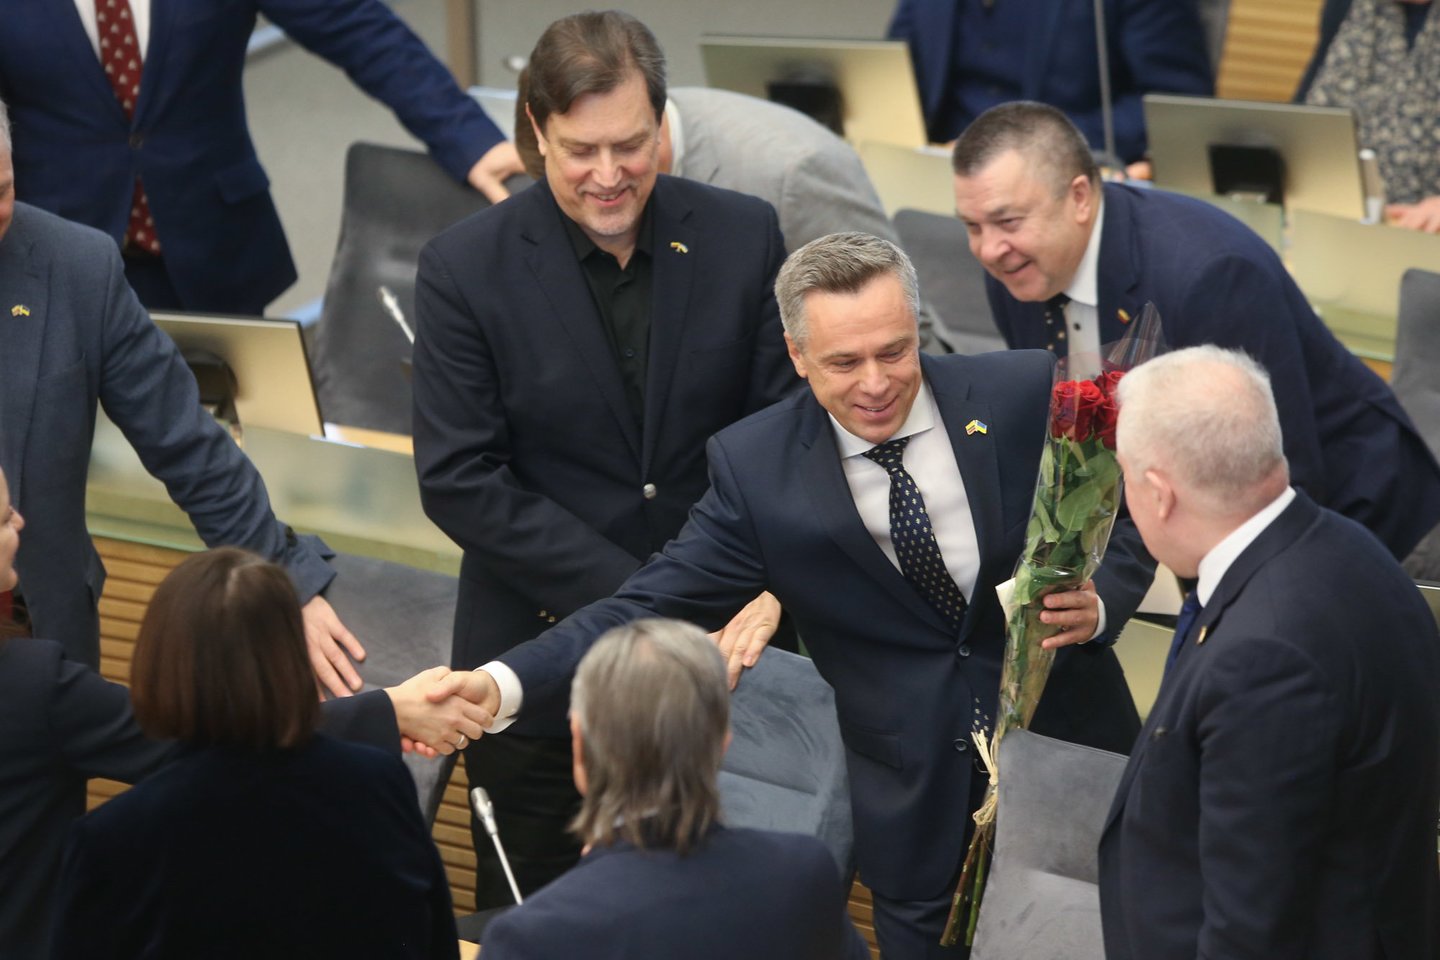 Seime penktadienį prasidėjo pavasario sesija. Ypatinga ji tapo Tėvynės sąjungos-Lietuvos krikščionių demokratų (TS-LKD) partijos atstovui, buvusiam krašto apsaugos viceministrui Viliui Semeškai, kuris, davęs priesaiką, tapo naujuoju parlamento nariu.<br>R.Danisevičiaus nuotr.